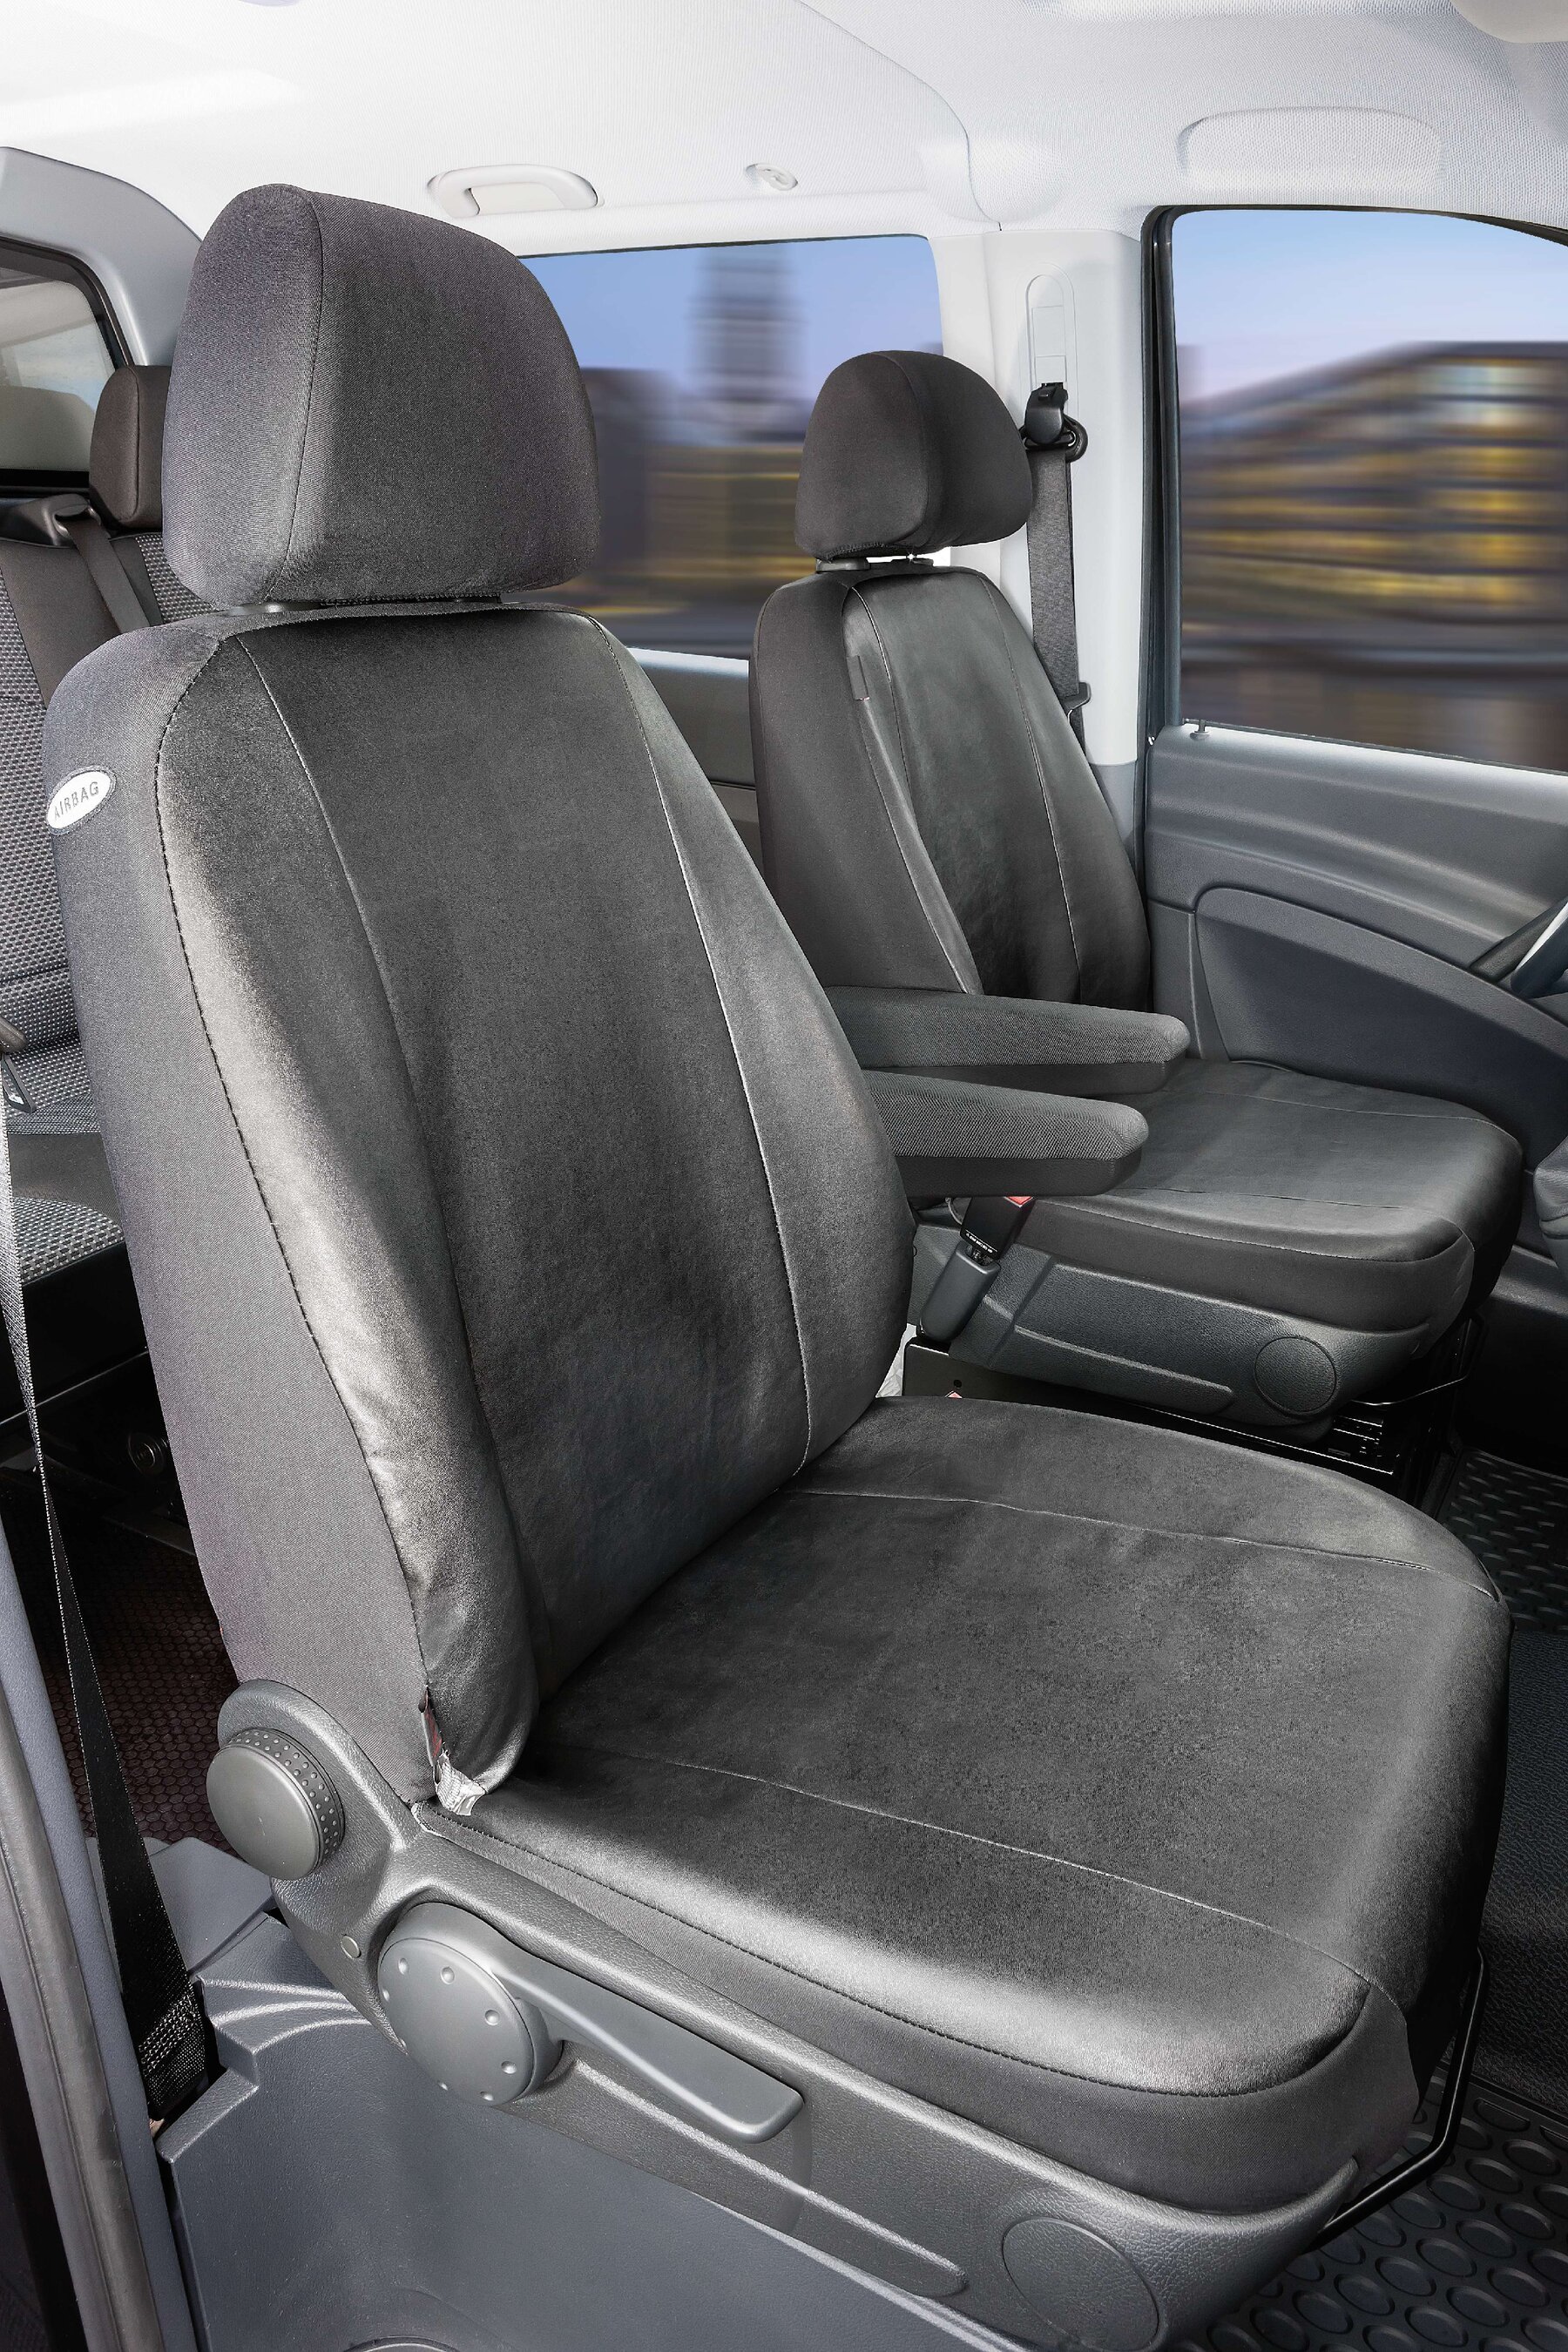 Autoschonbezug Transporter aus Kunstleder für Mercedes-Benz Viano/Vito, 2 Einzelsitze Armlehne innen